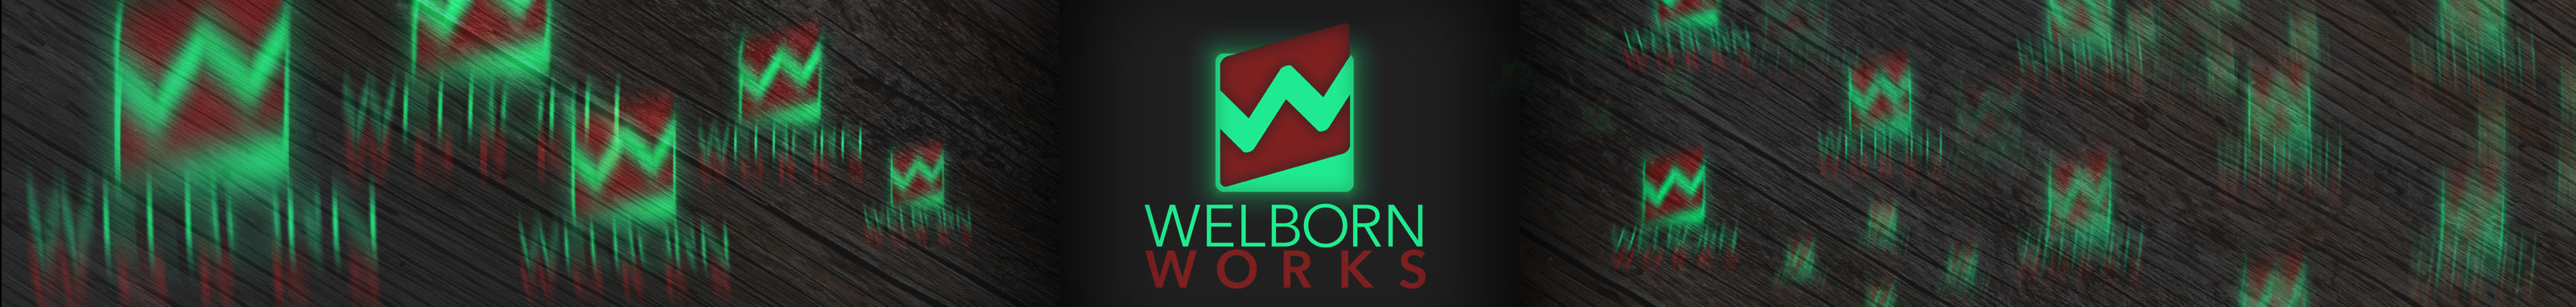 Bryan Welborn's profile banner